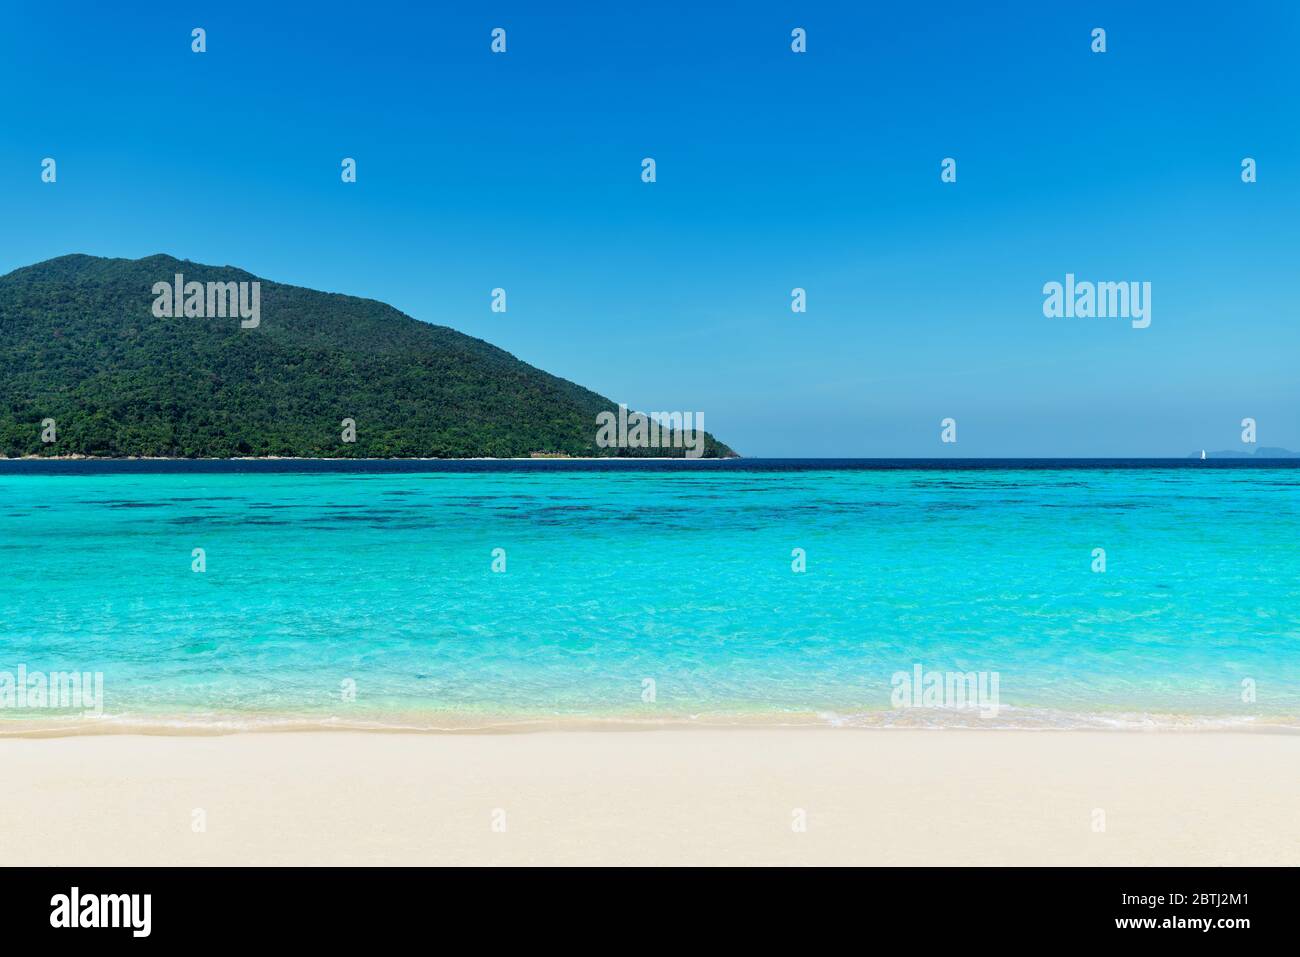 Türkisblaues Meer und weißer Sandstrand auf tropischer Insel. Sommerurlaub, Reisen, Natur Hintergrund Konzept Stockfoto